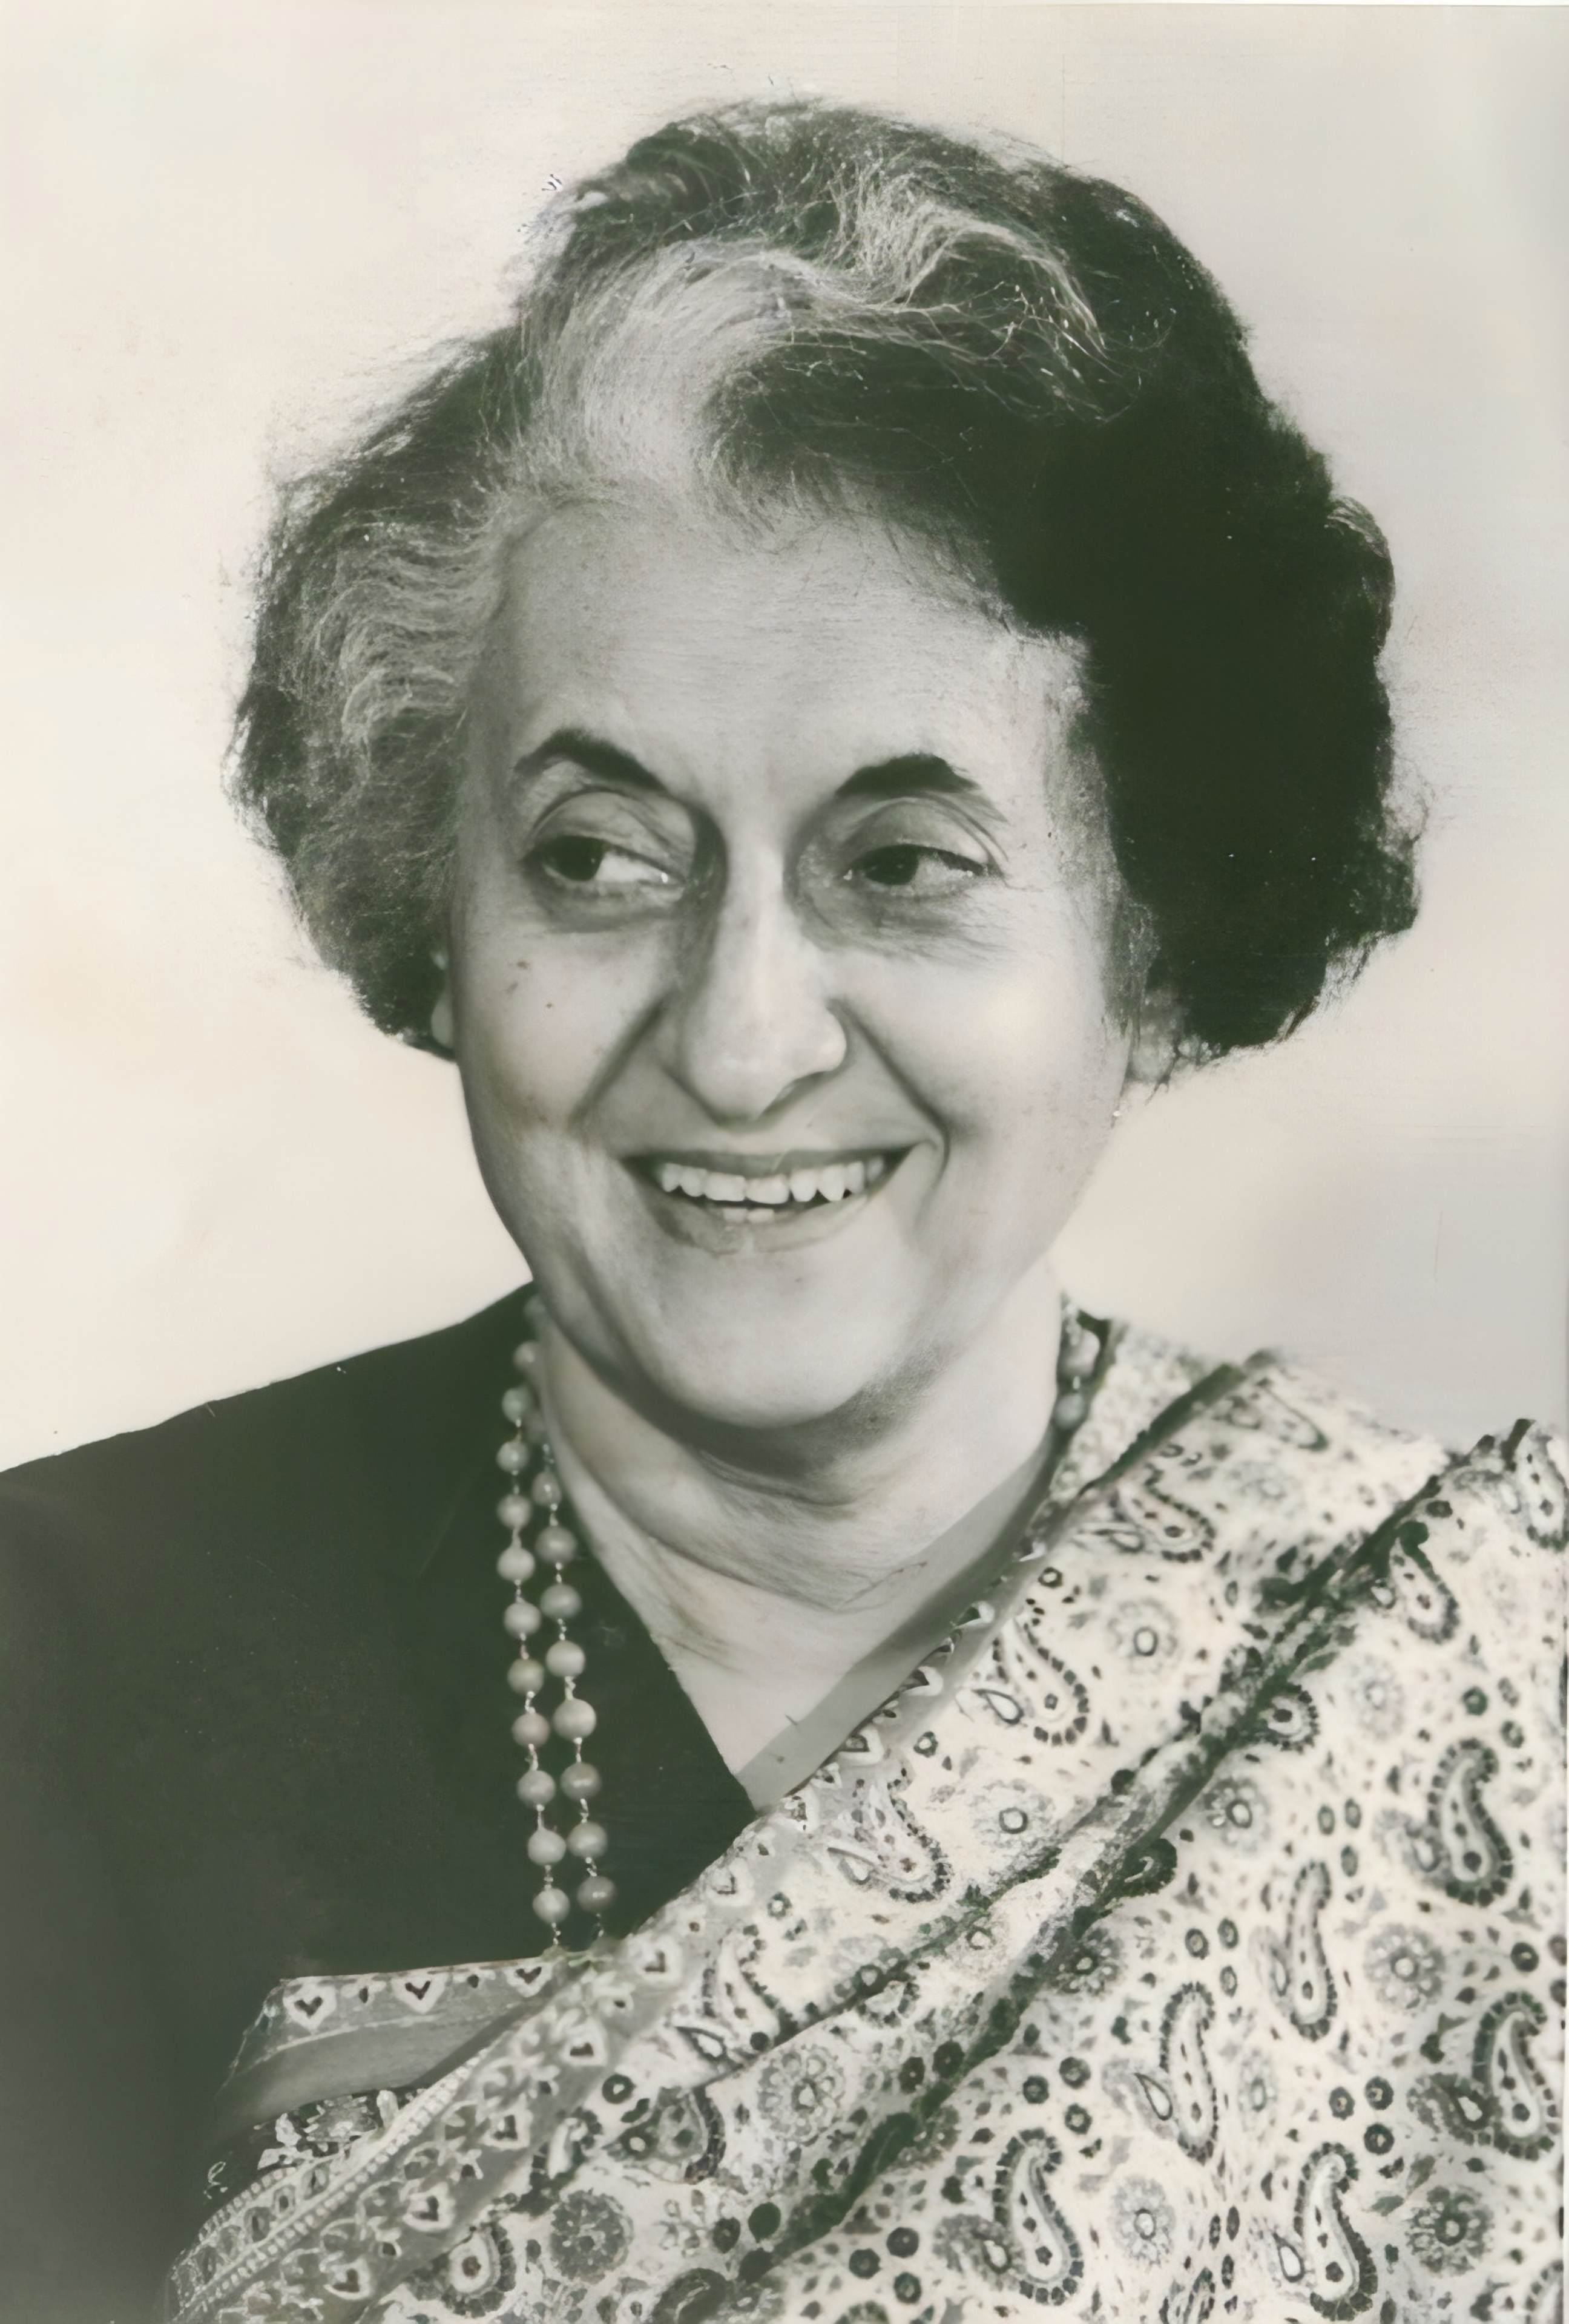 PM Modi, Sonia Gandhi pay tribute to Indira Gandhi on her 105th birth anniversary